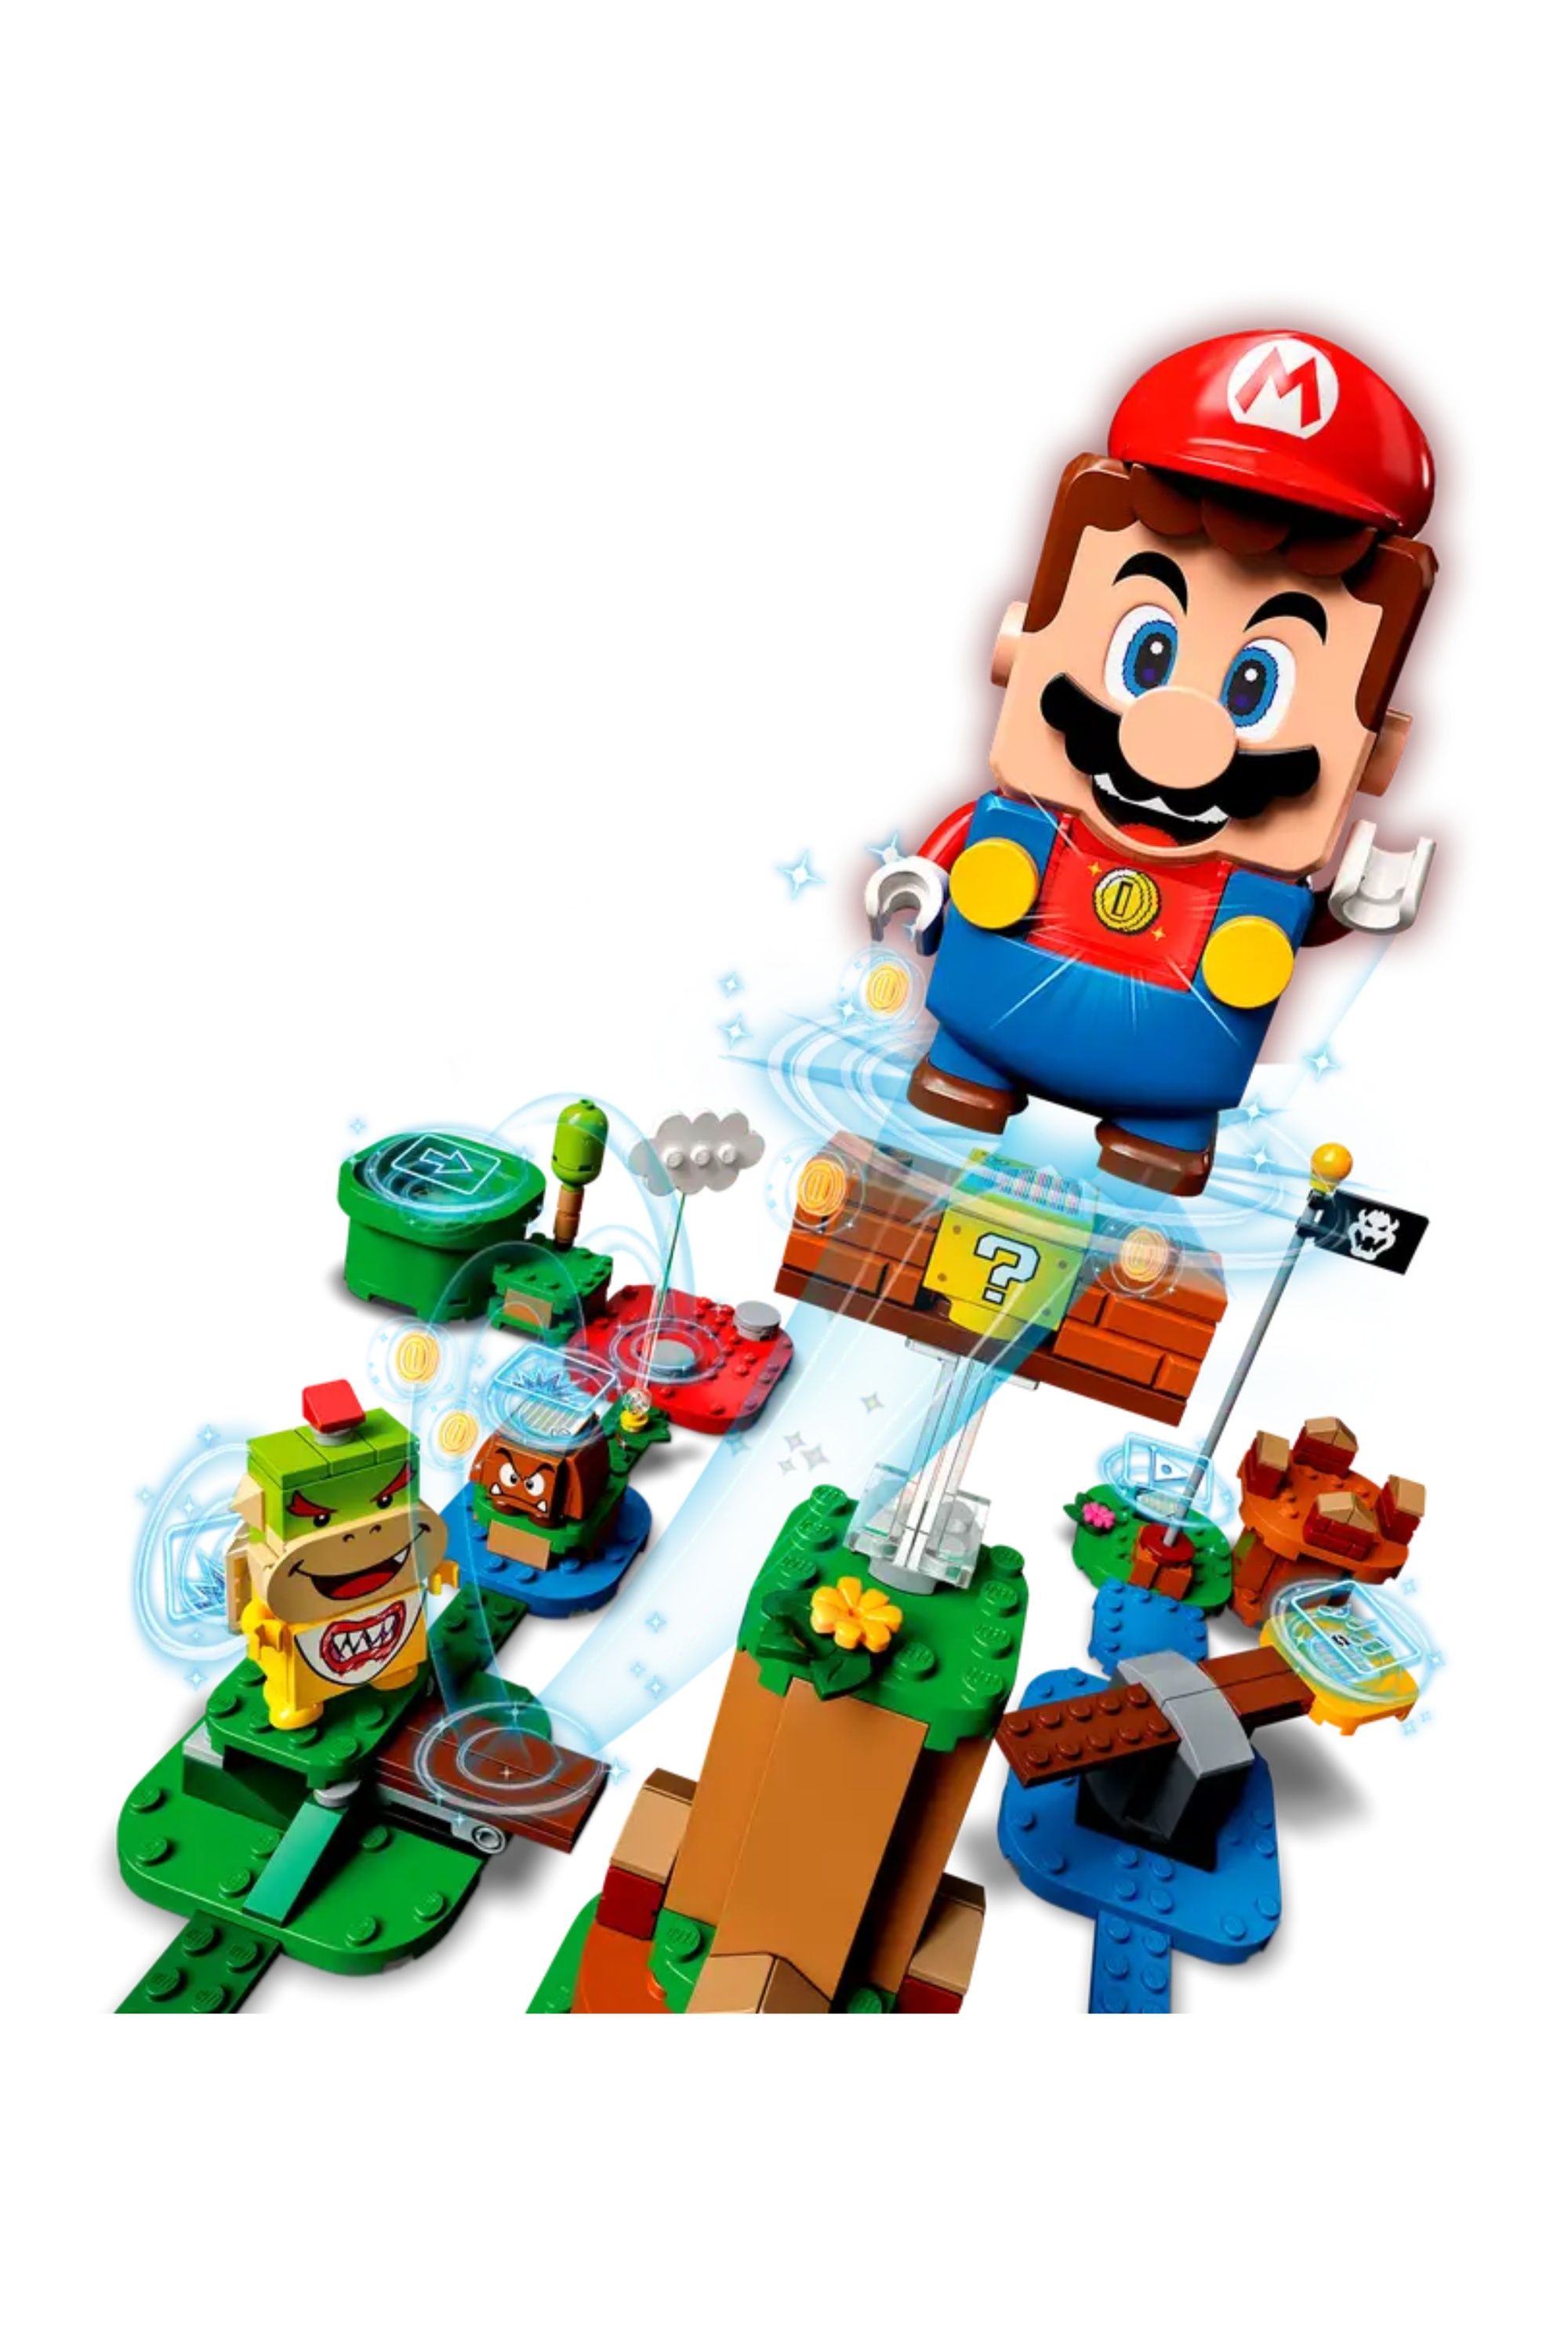 Lego Mario starter course set